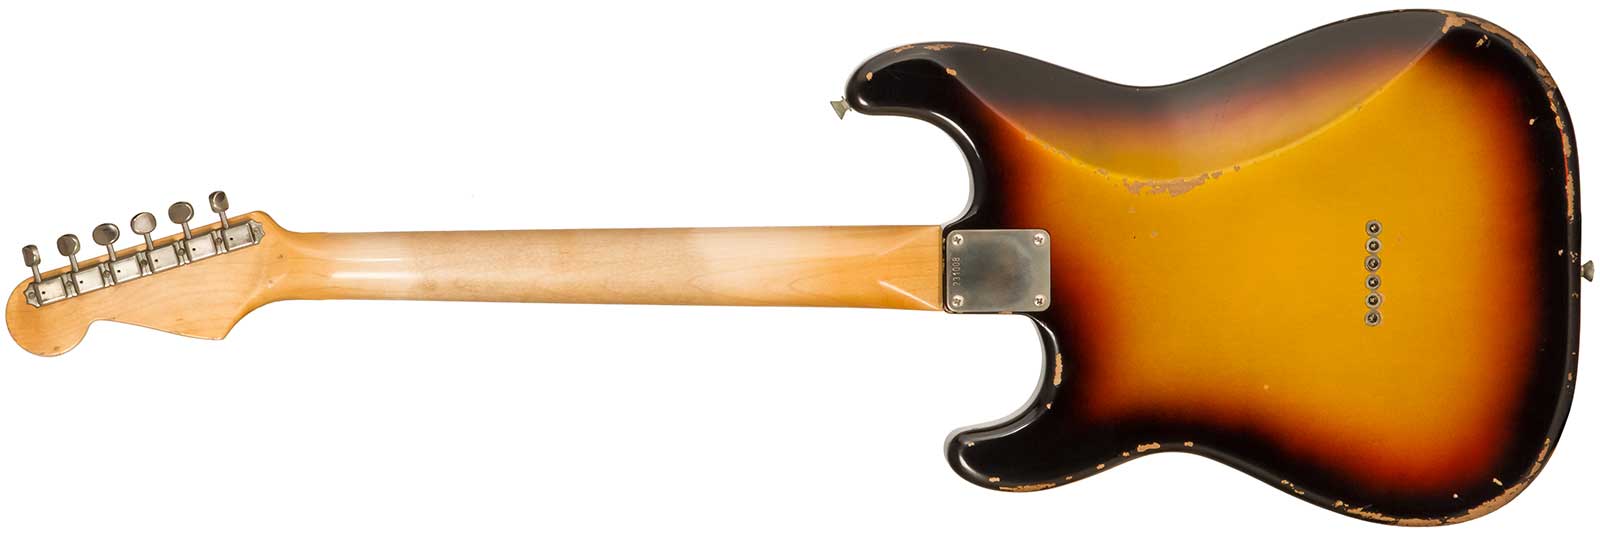 Rebelrelic S-series 1961 Hardtail 3s Ht Rw #231008 - 3-tone Sunburst - Guitare Électrique Forme Str - Variation 1